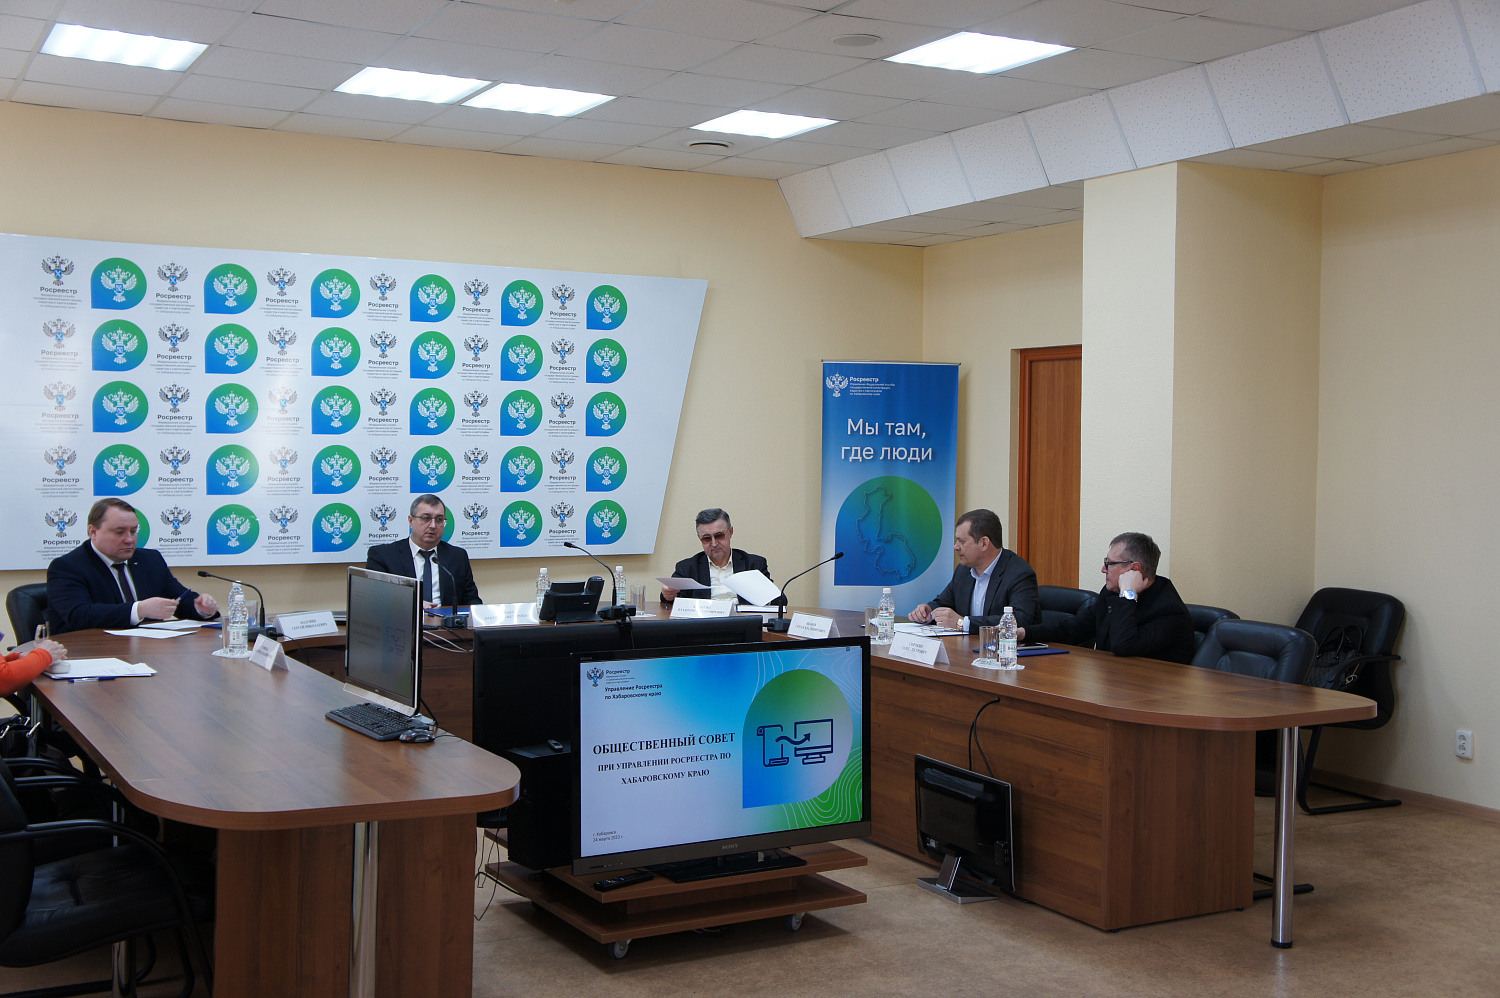 Общественный совет при Управлении Росреестра по Хабаровскому краю провел первое заседание в новом составе